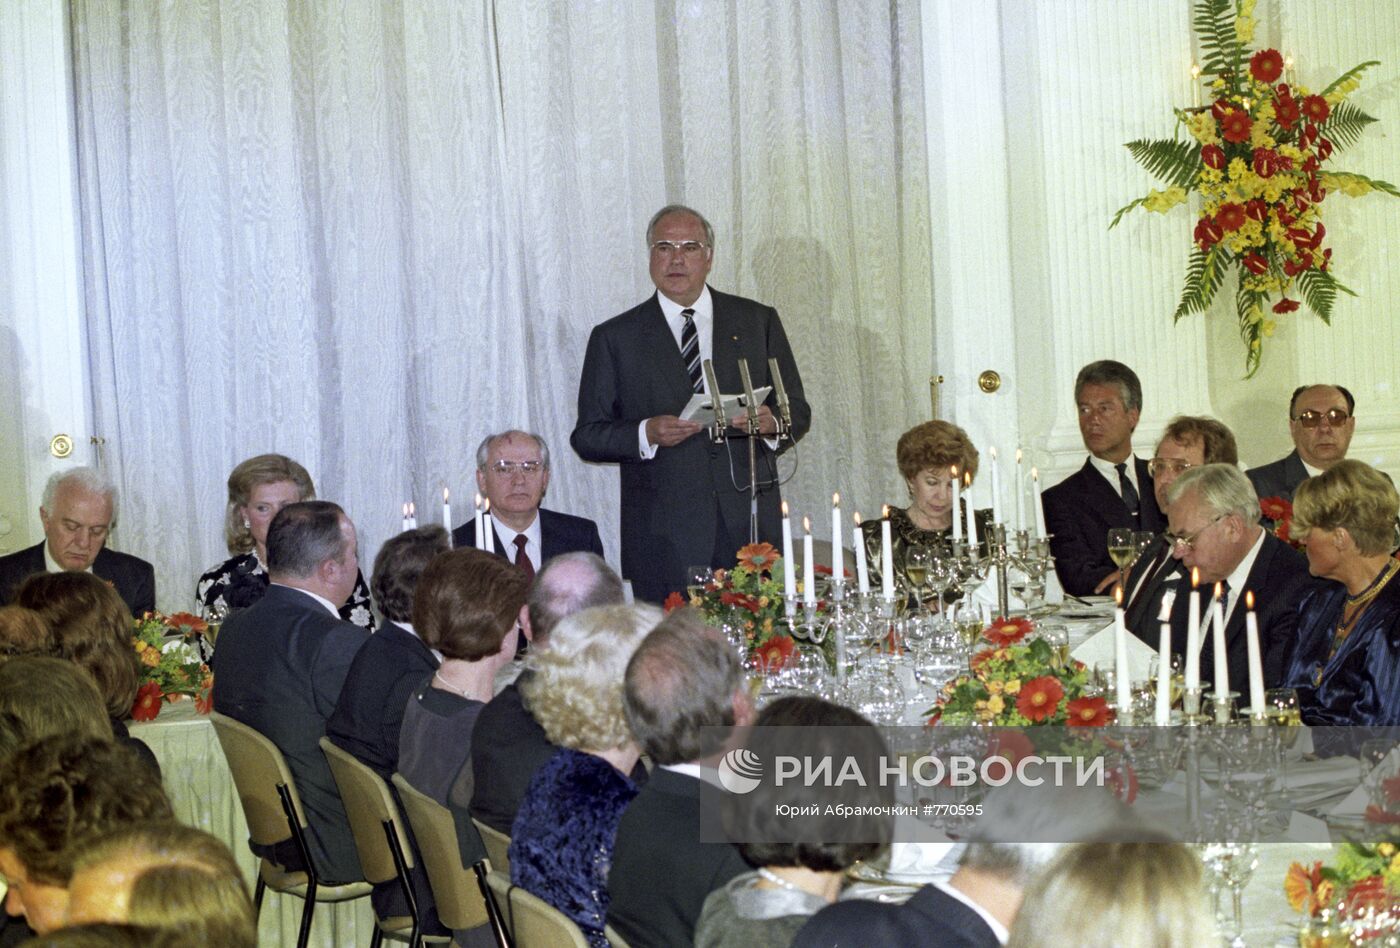 Прием в честь Михаила Горбачева и его супруги Раисы Горбачевой